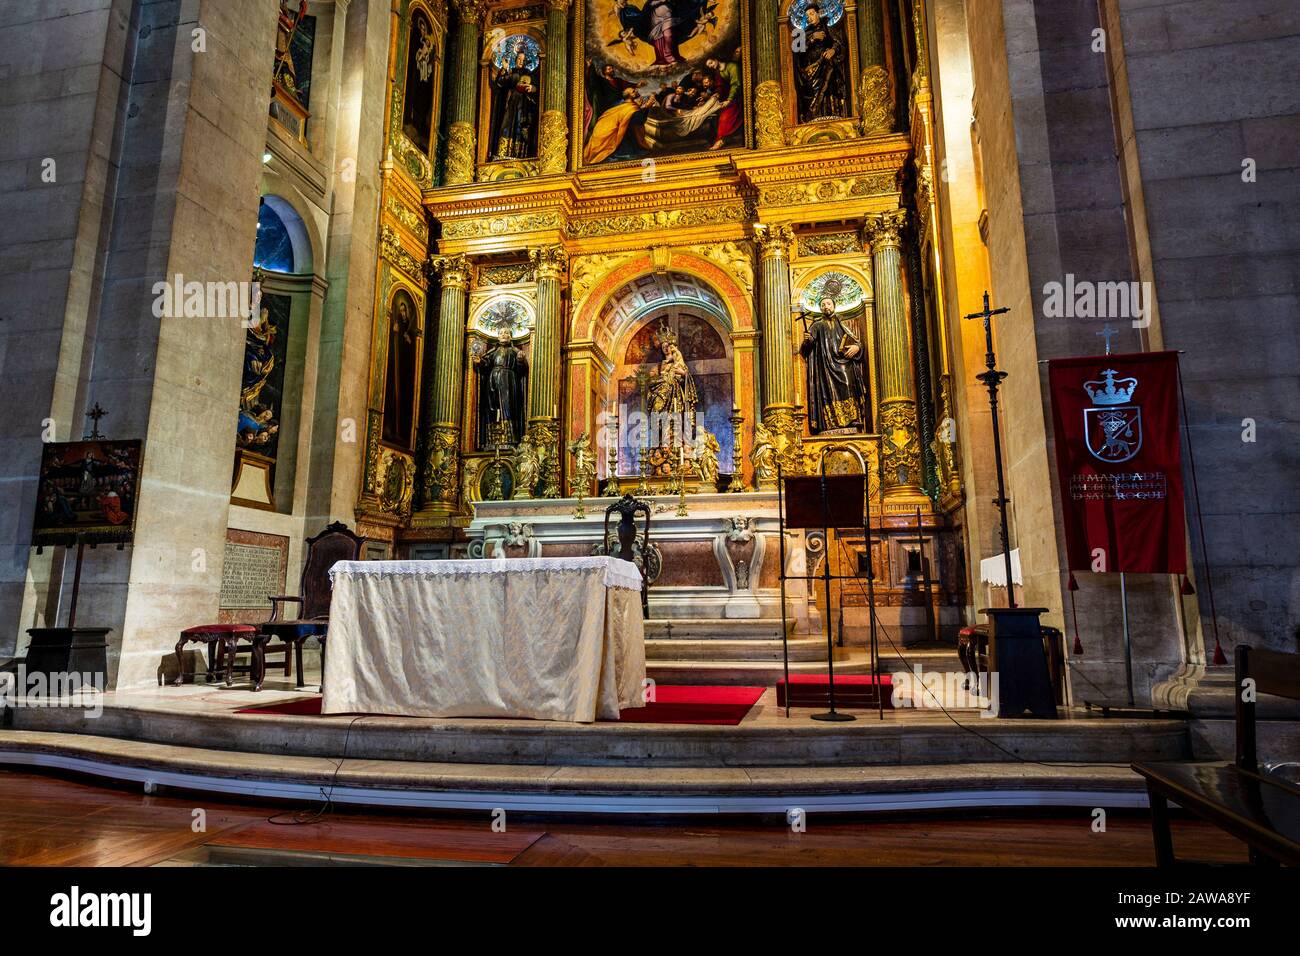 Dettaglio del coro con altare dorato e rappresentazione dei più grandi santi gesuiti, a Bairro Alto, Lisbona, Portogallo Foto Stock